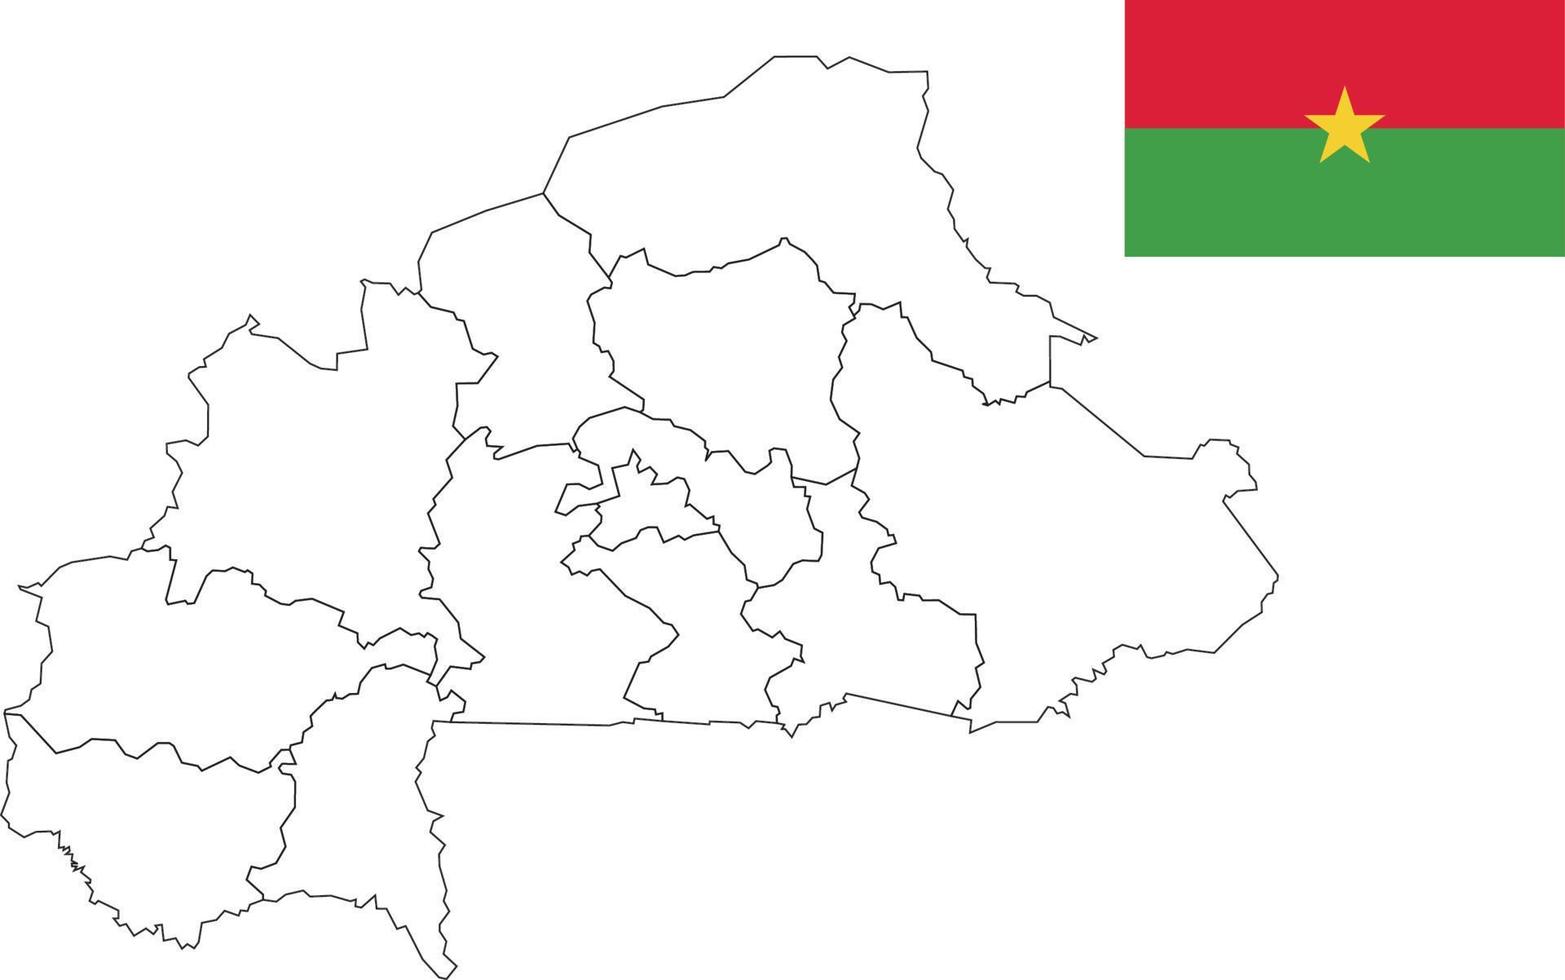 Karte und Flagge von Burkina Faso vektor